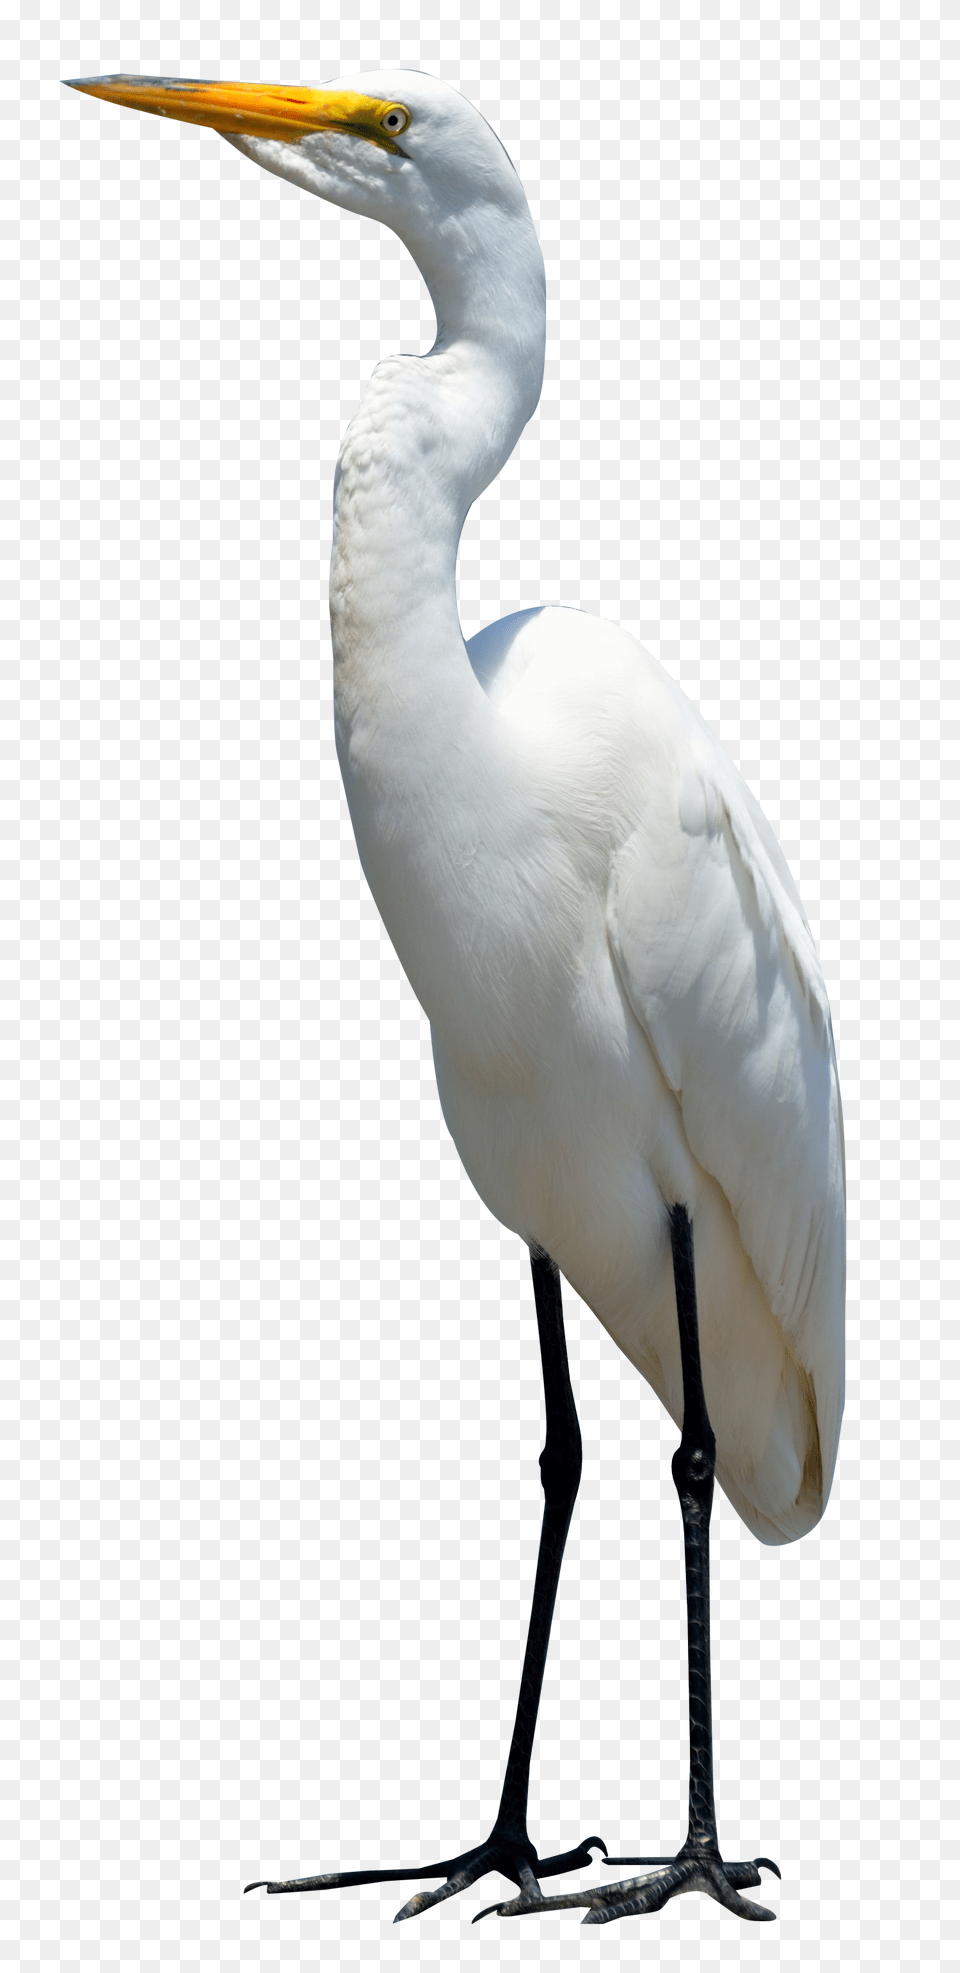 Egret Bird Image, Animal, Crane Bird, Waterfowl, Heron Free Png Download